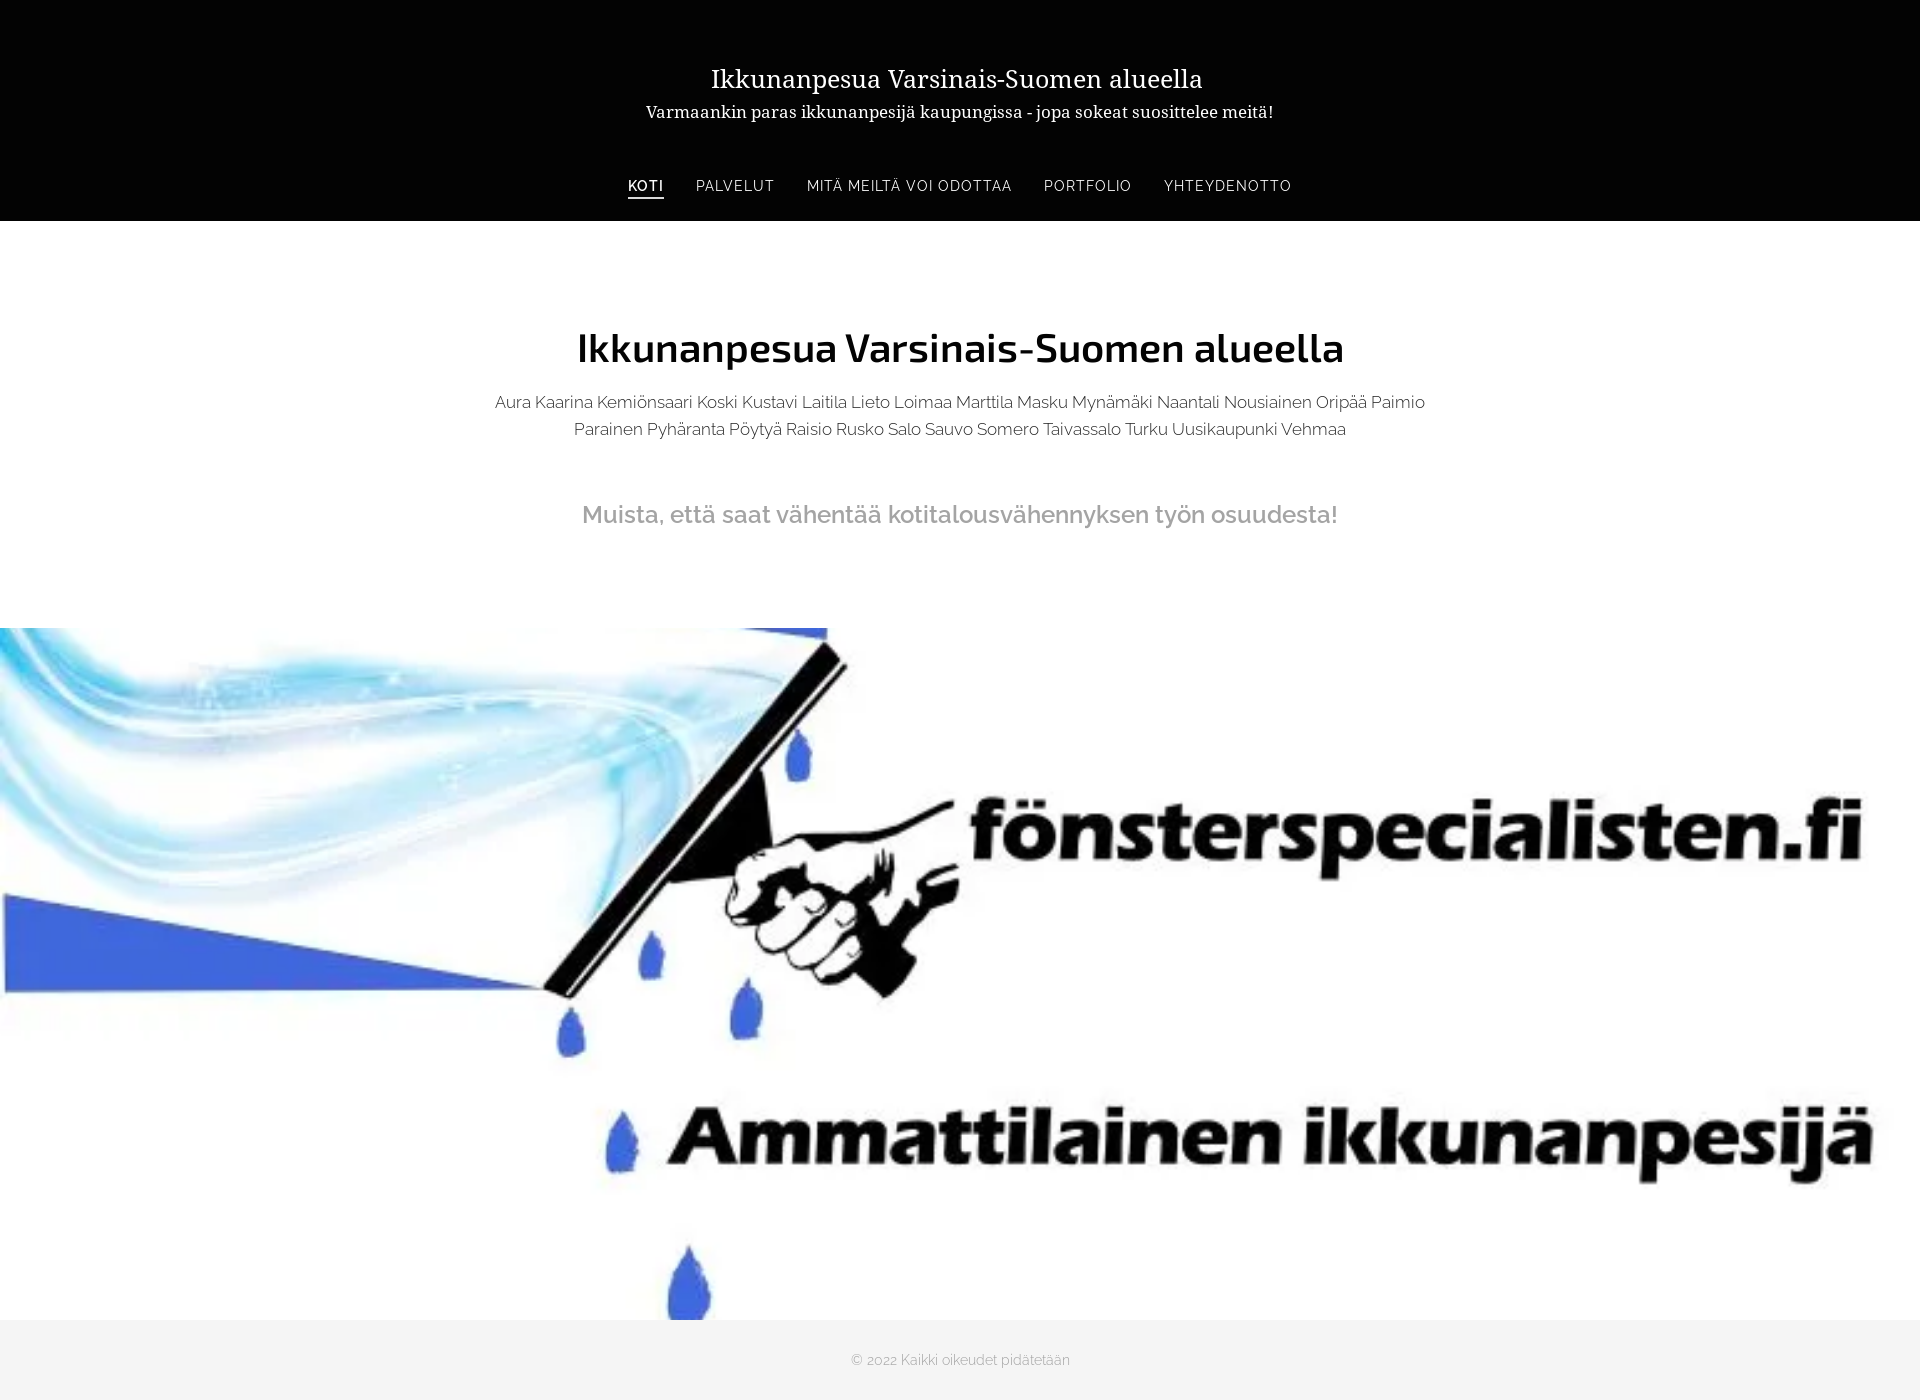 Näyttökuva fonsterspecialisten.fi